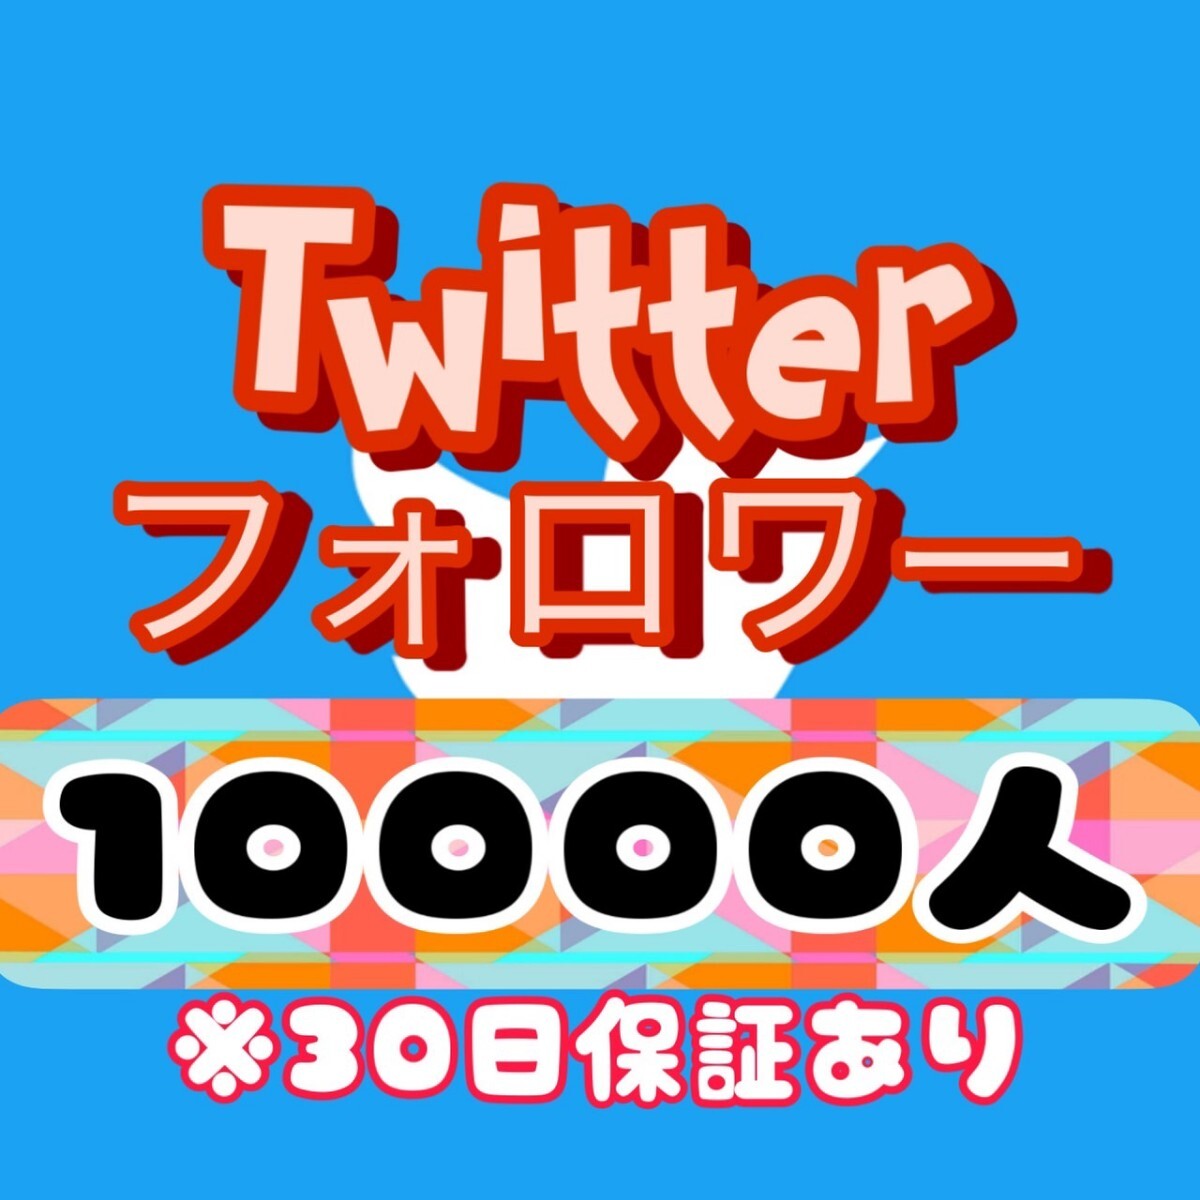 【 бонус   10000 Twitter ... количество   увеличение  】... X ... Youtube  автоматически  интрумент   ... follower ...